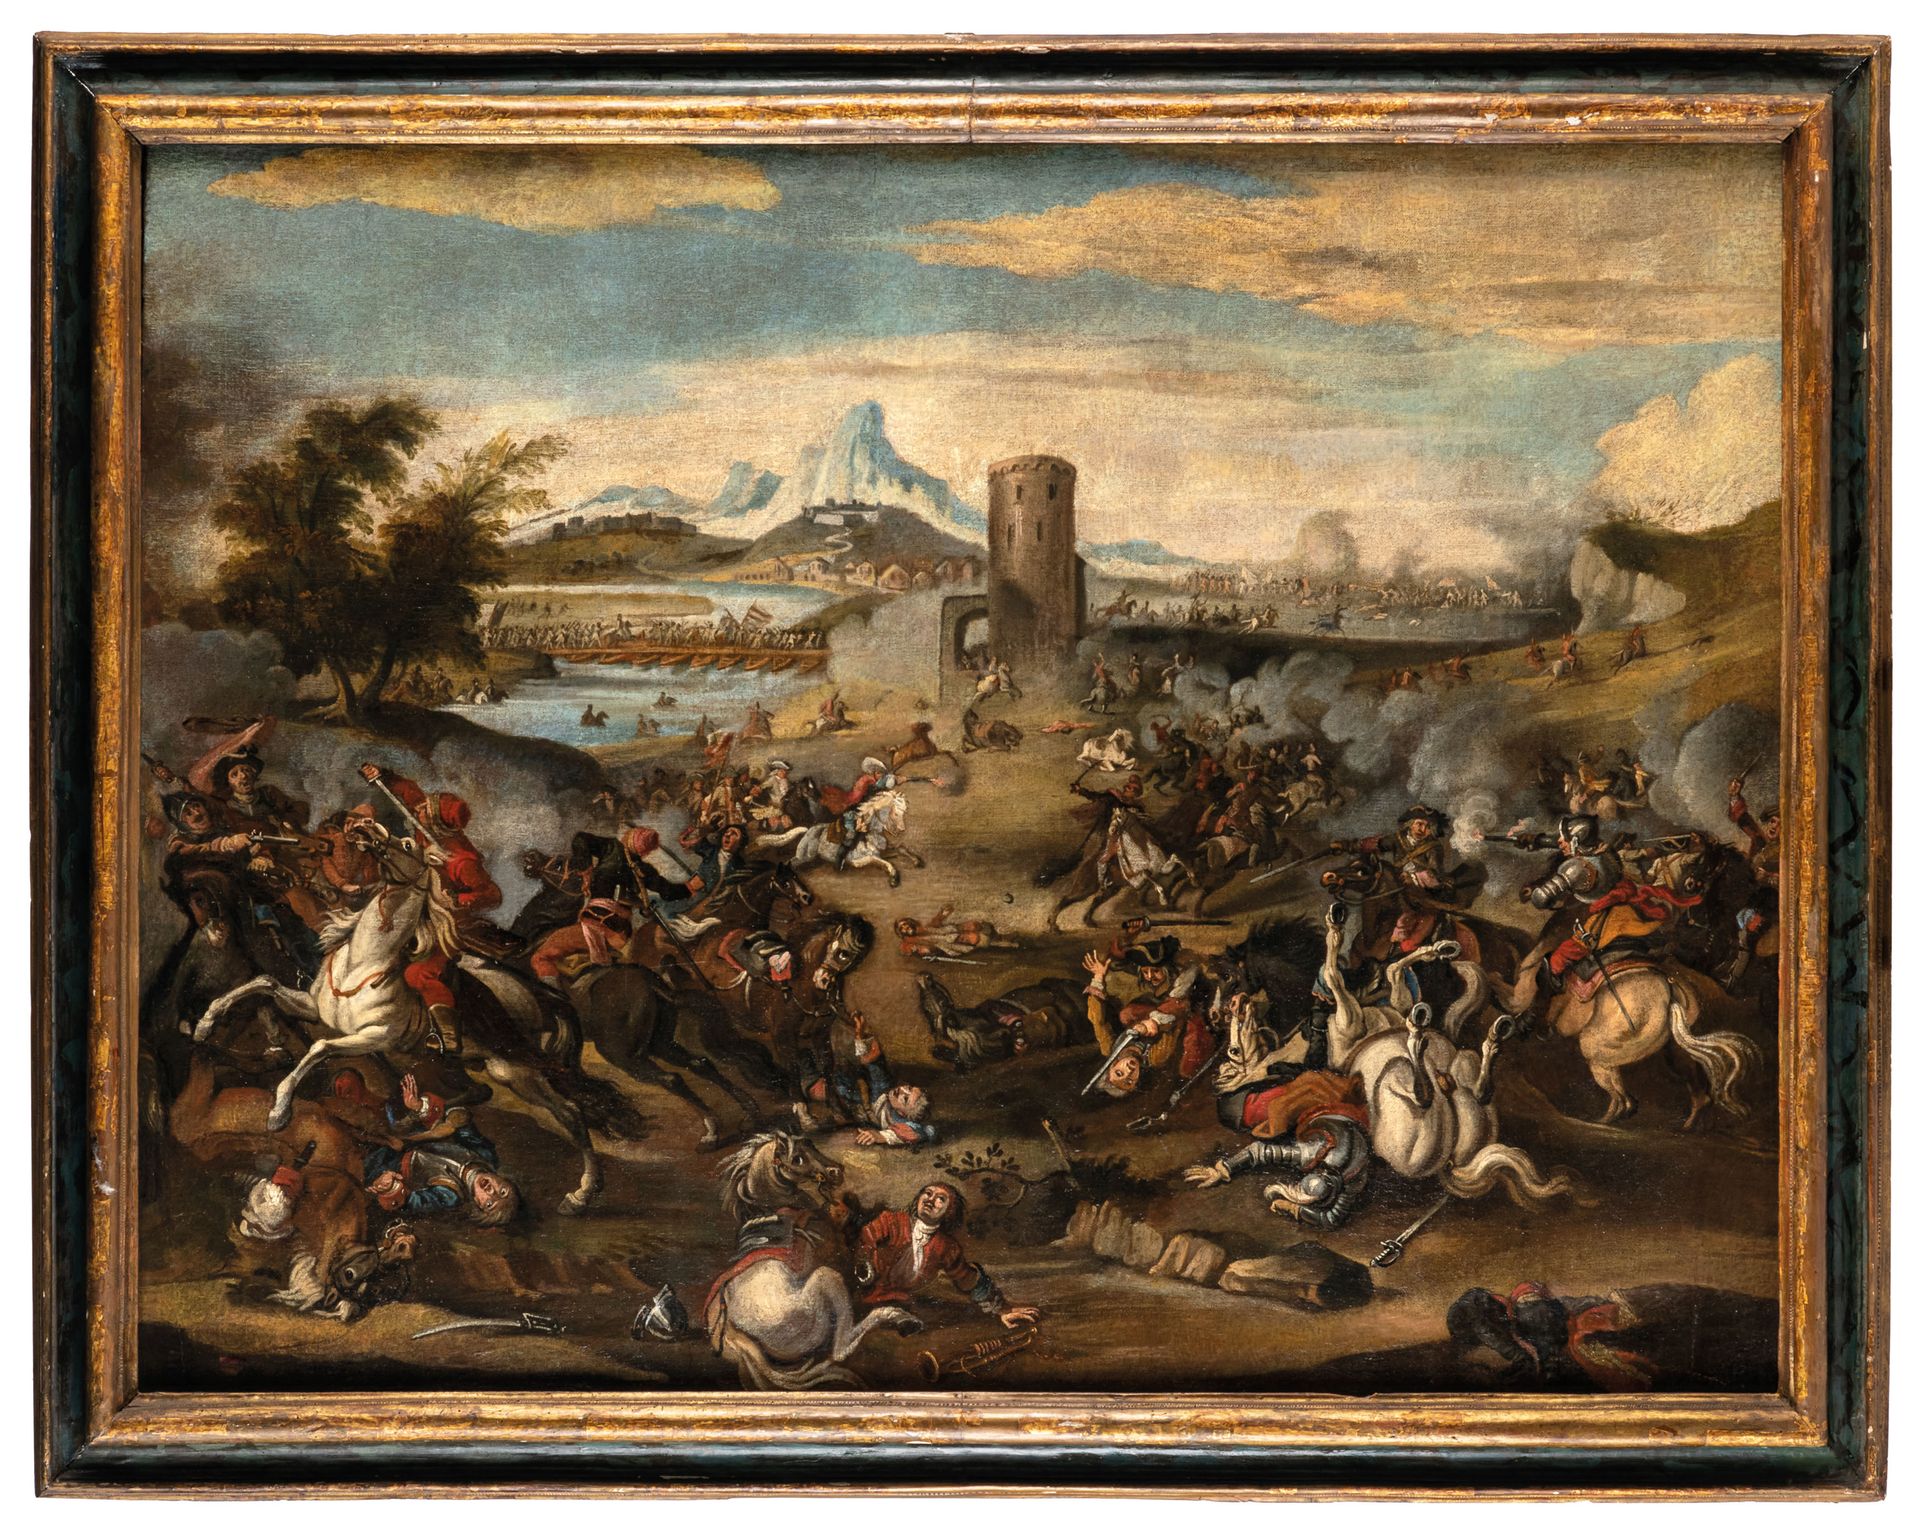 PITTORE DEL XVIII SECOLO Bataille
Huile sur toile, 103X135 cm